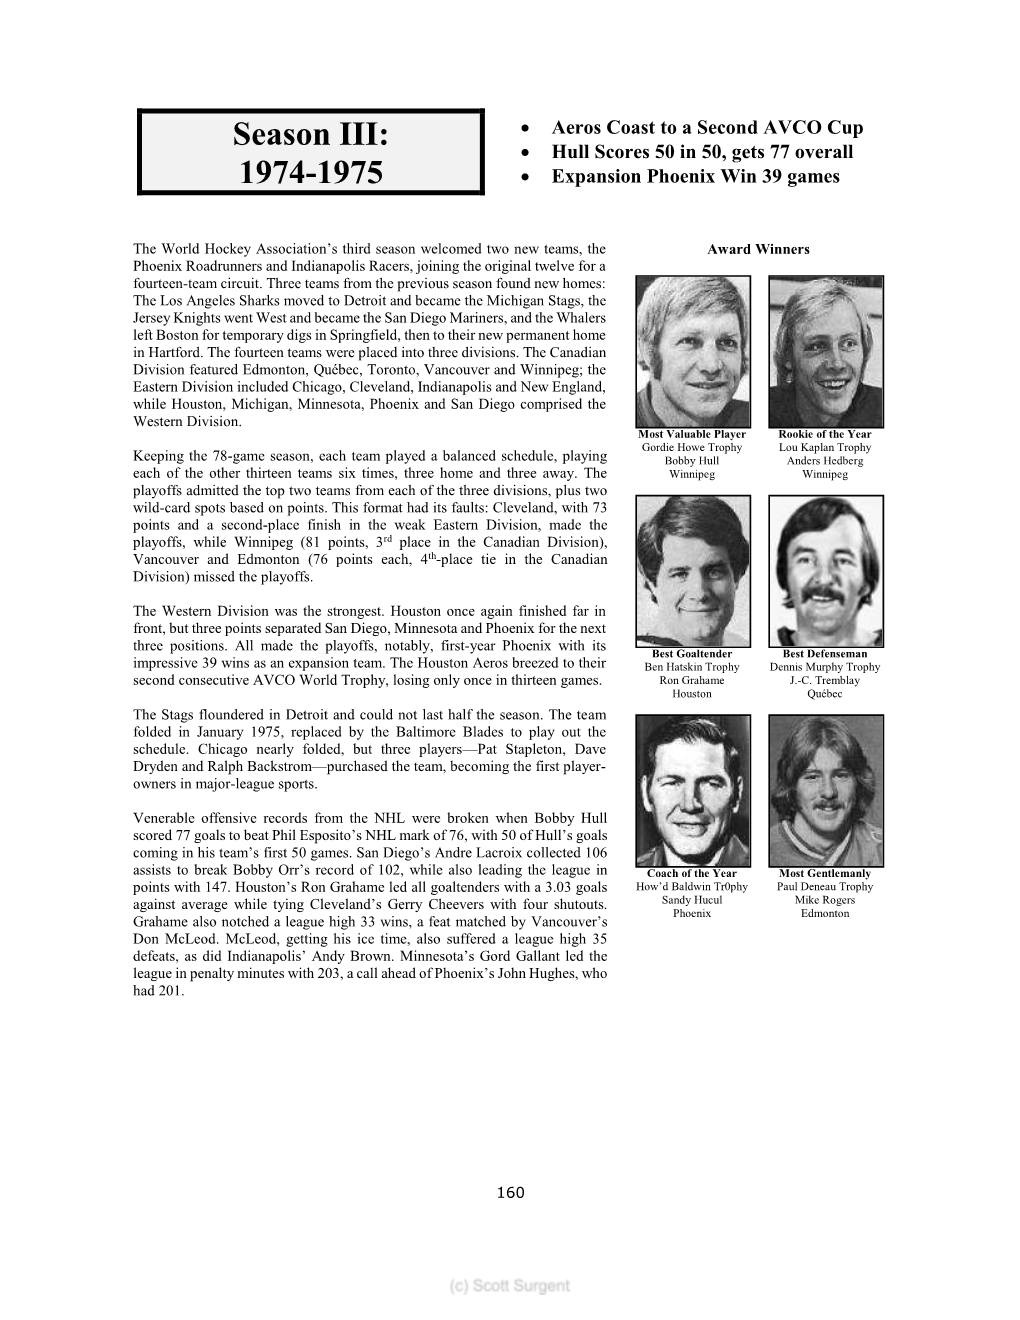 Season III: 1974-1975